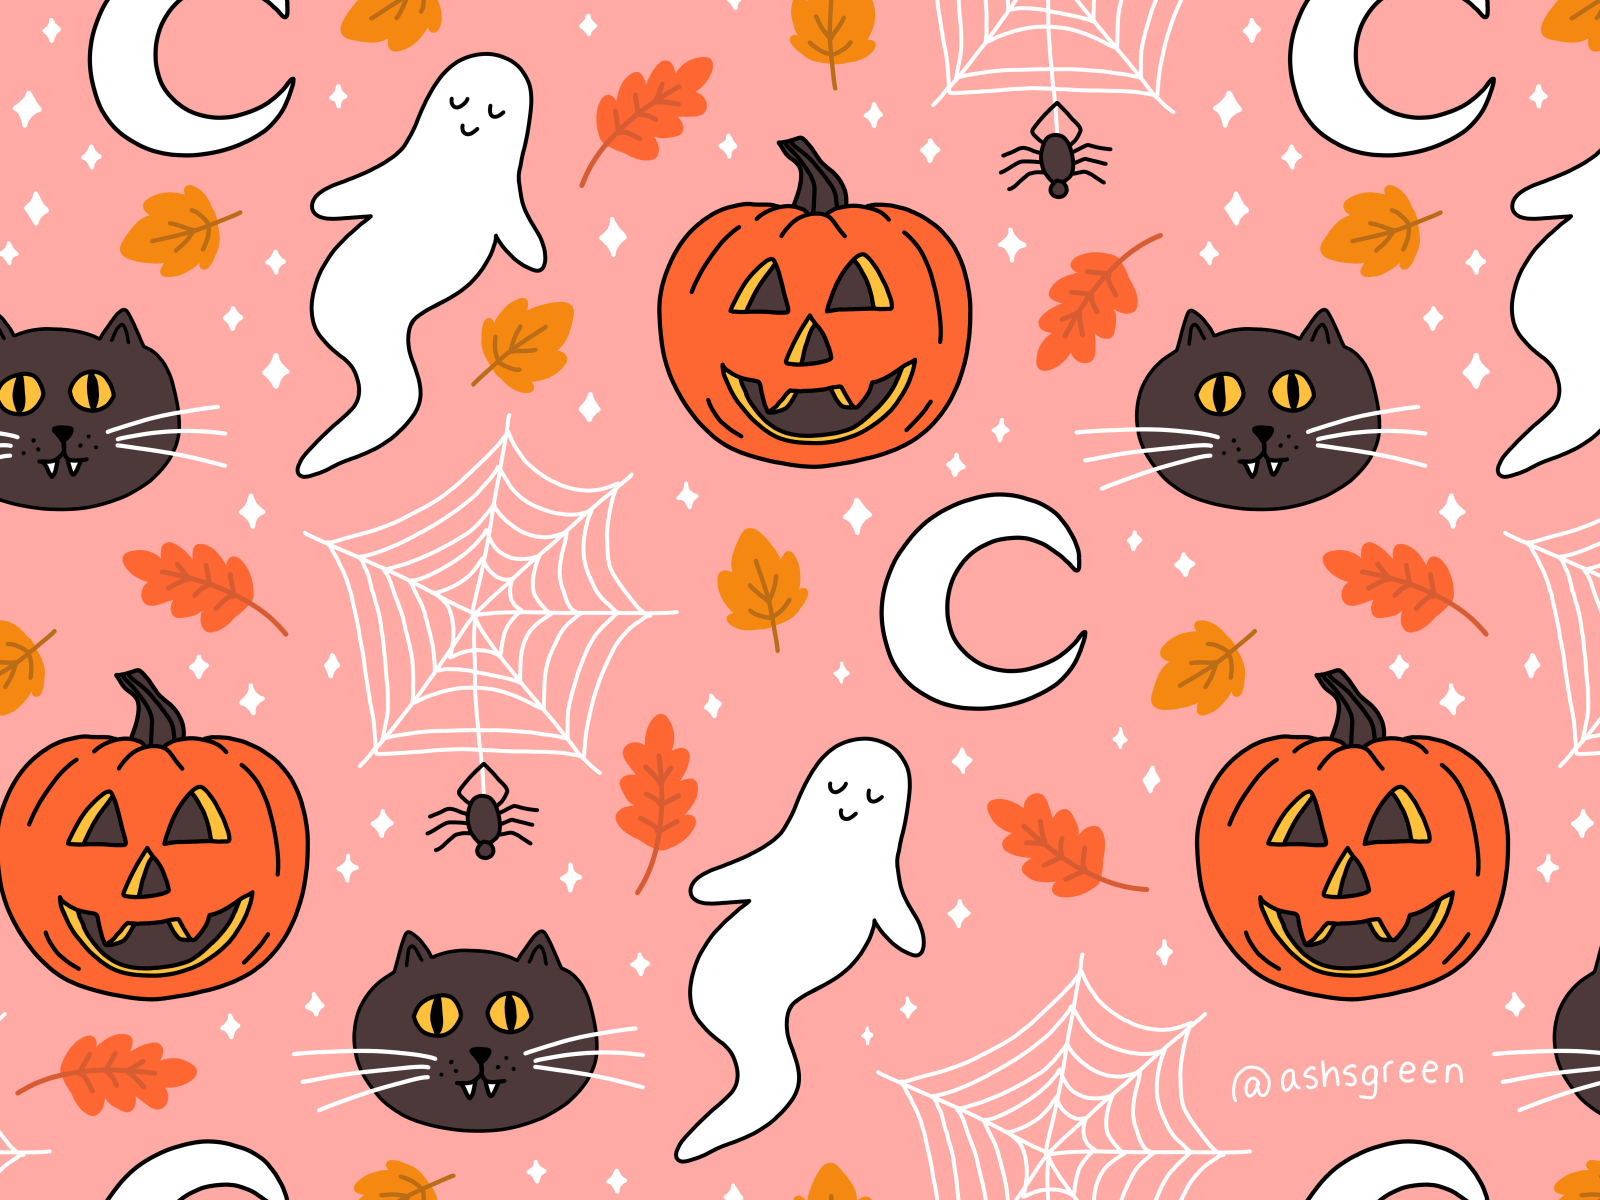 78688 Cute Halloween Wallpaper Images Stock Photos  Vectors   Shutterstock